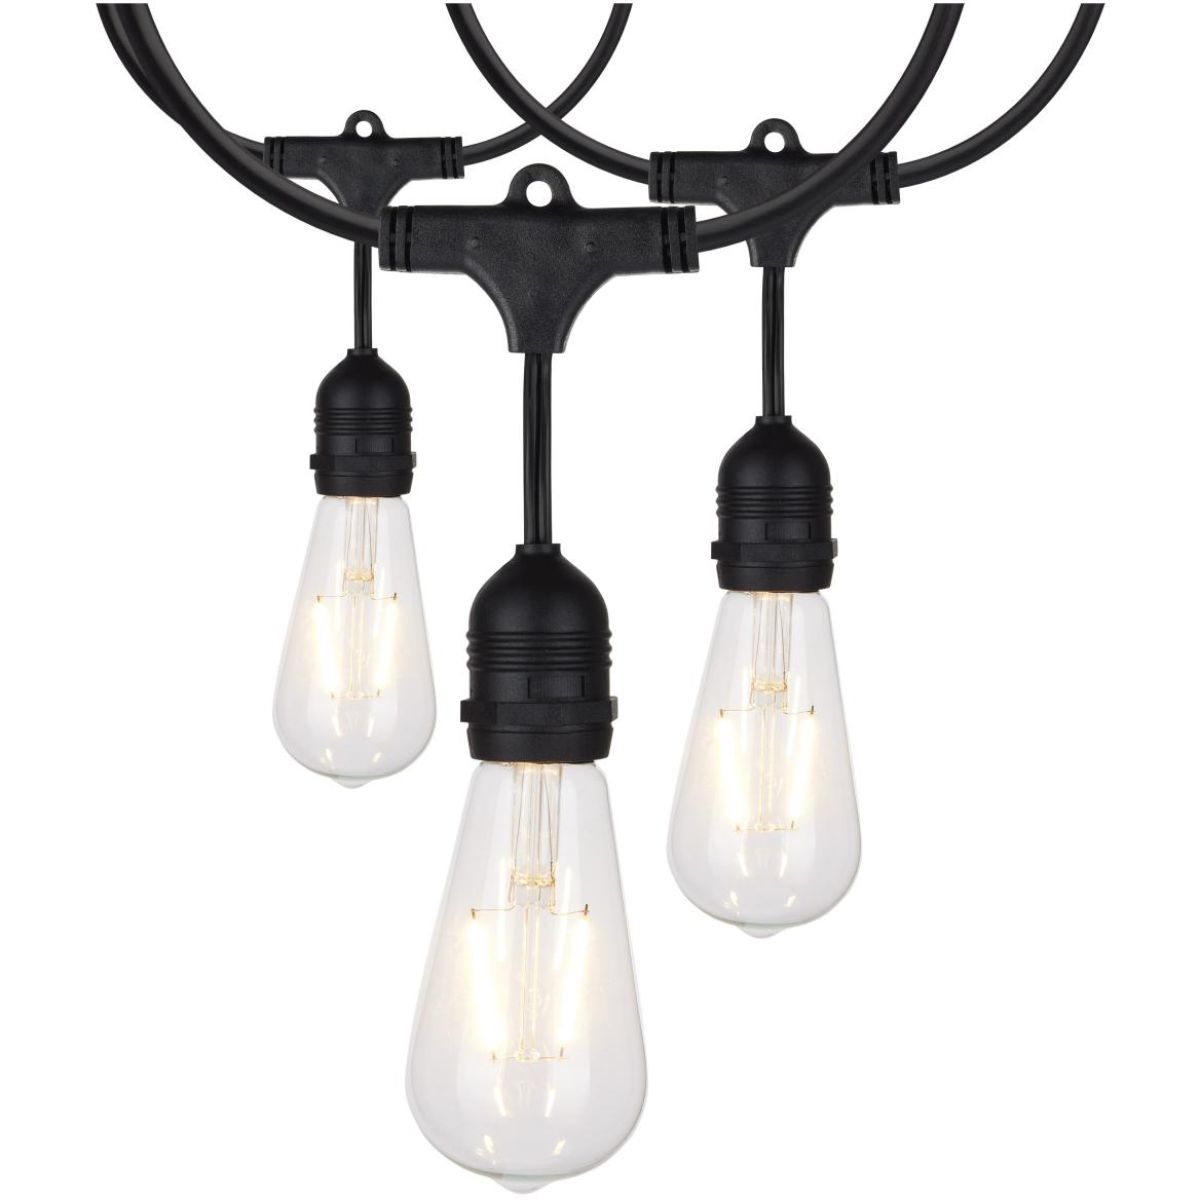 24 Feet LED String Light, 12 ST19 bulbs, Warm White 2200K, 120V, Indoor/Outdoor - Bees Lighting